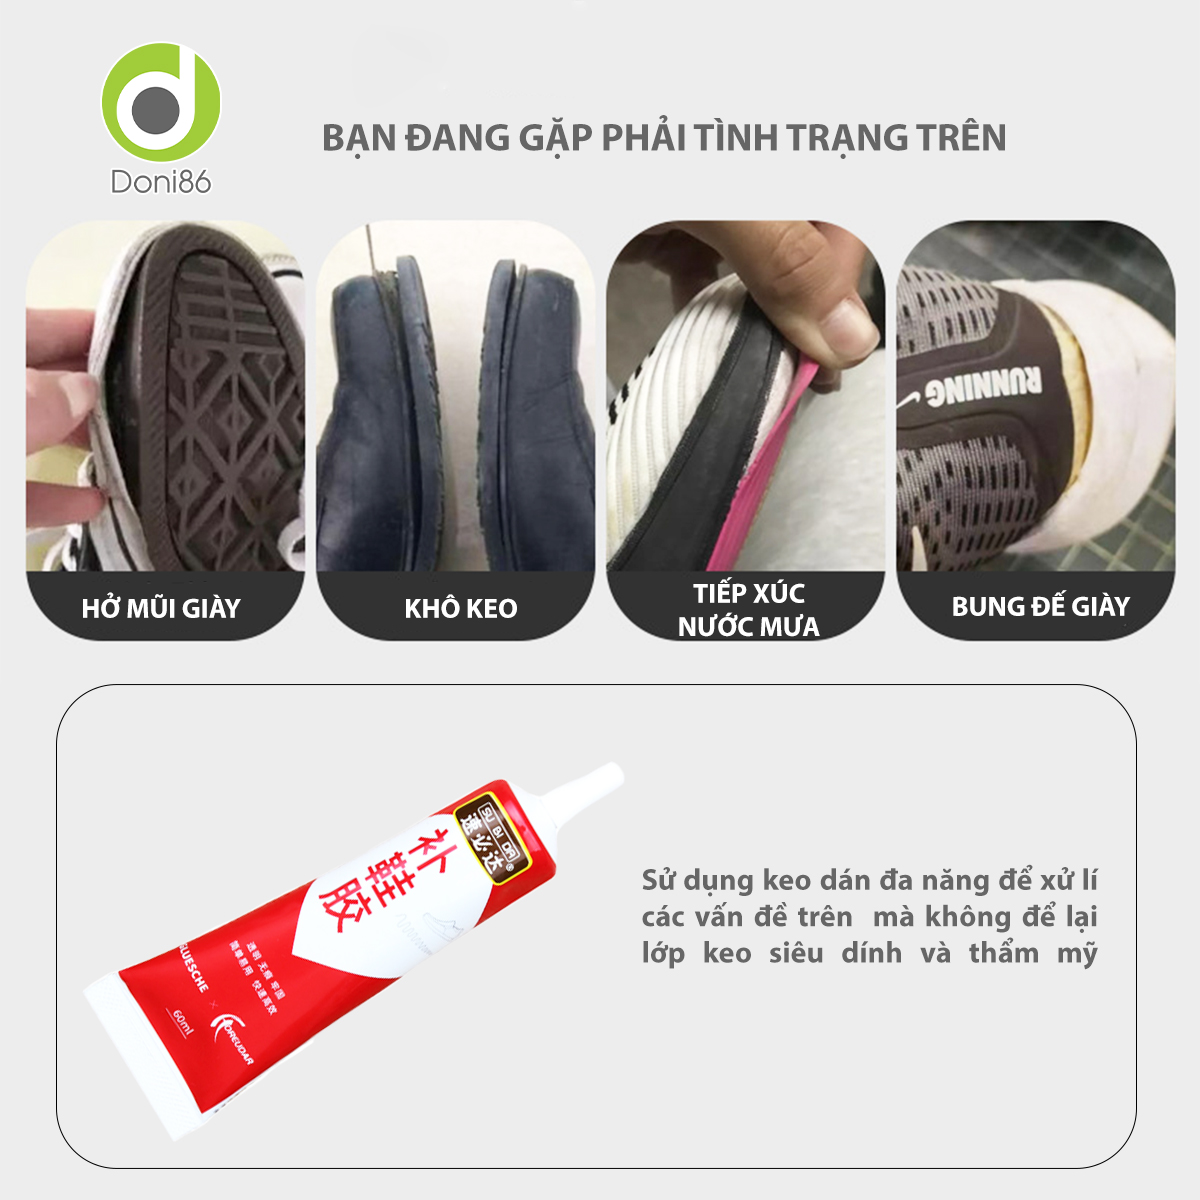 Keo dán giày mùi hương dễ chịu, an toàn cho da tay, sức khỏe, chất keo bền chặt - Doni - DOPK356